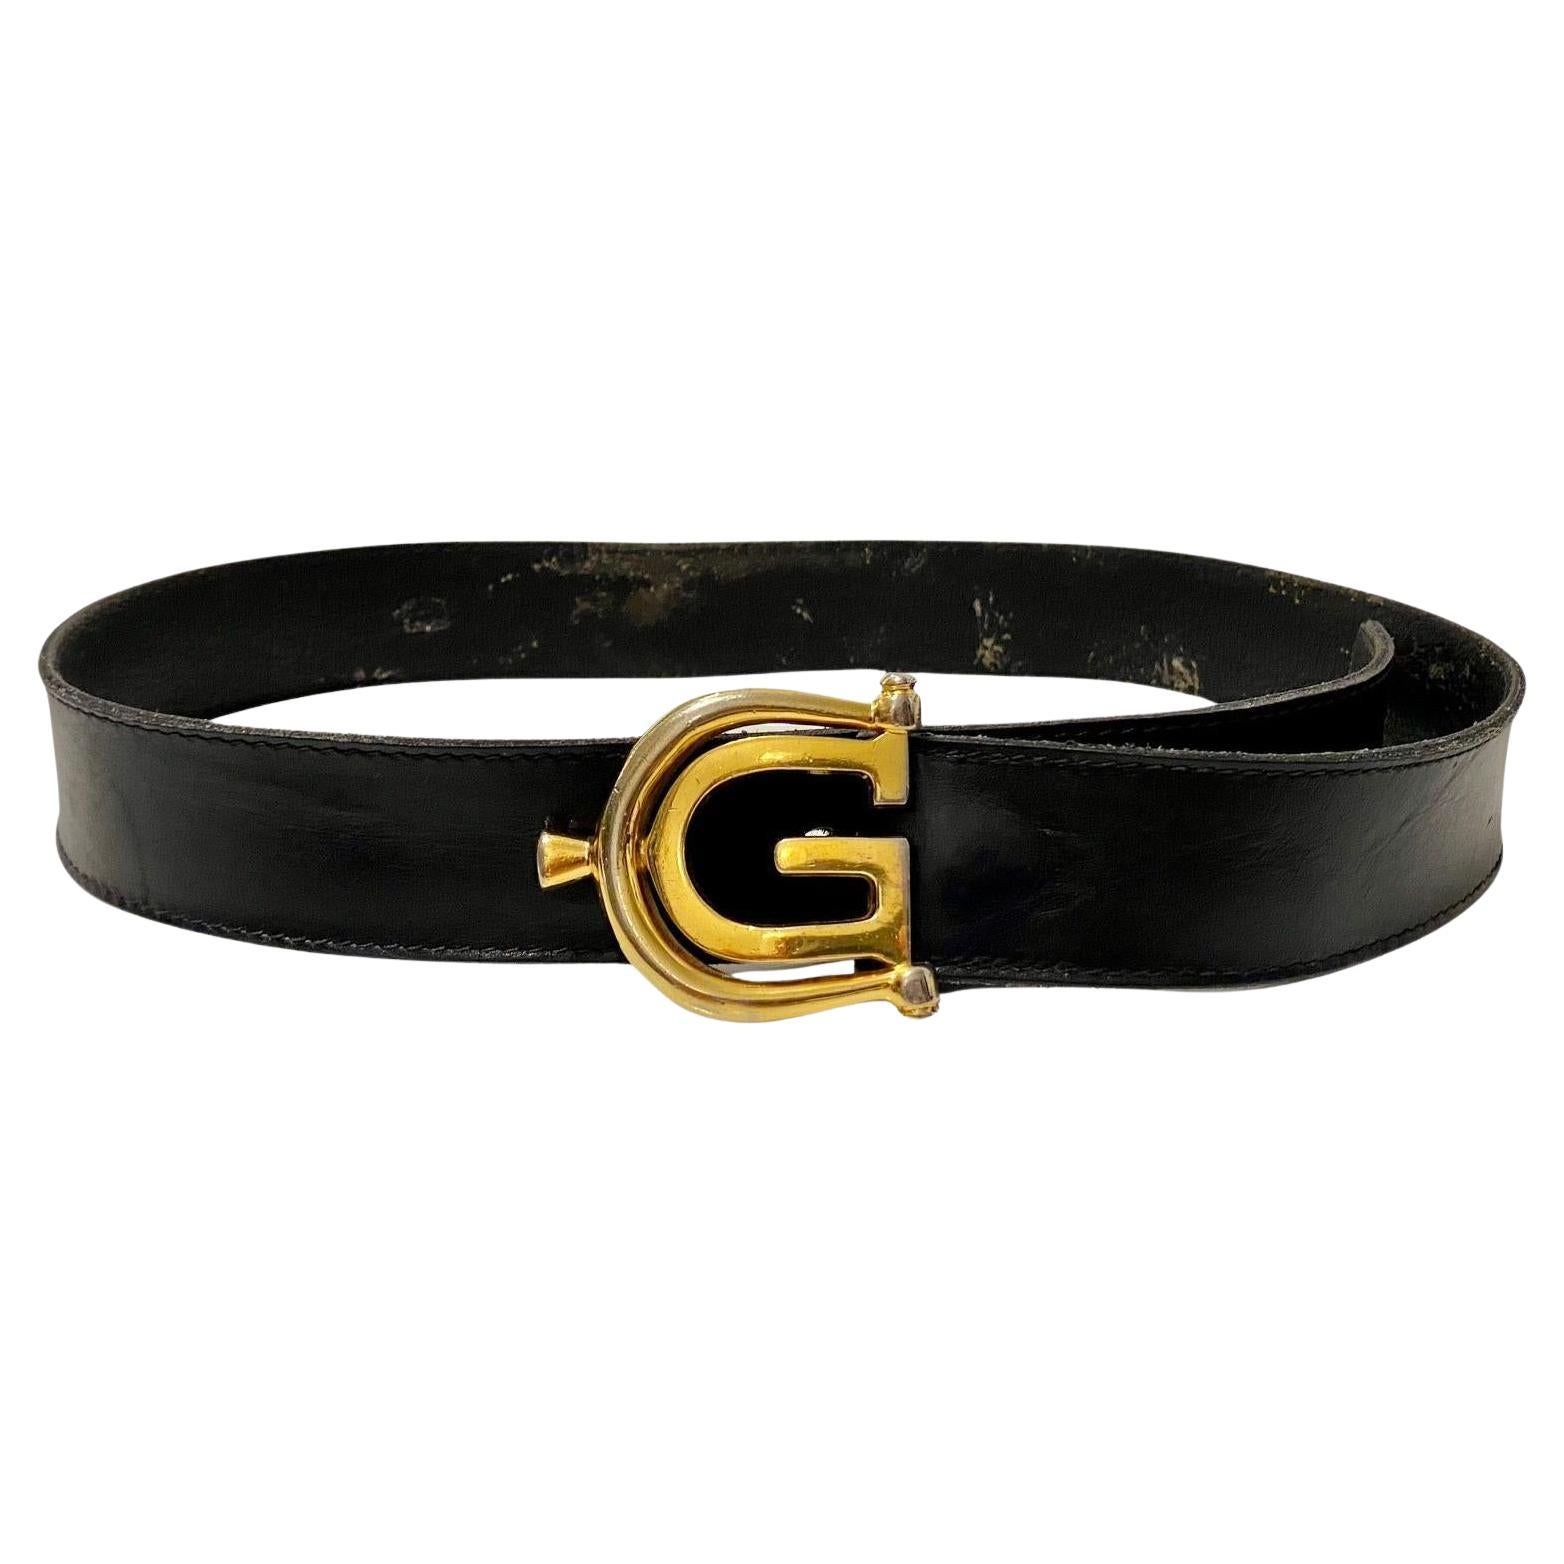 Dieser elegante schwarze Ledergürtel von Gucci wurde in Italien gefertigt und ist mit einer goldfarbenen GG-Metallschnalle verziert.

Zustand: Vintage, 1980er Jahre, insgesamt gut, minimale Gebrauchsspuren 

Abmessungen: 85x4cm - 33x1.6in 

Größe: 70